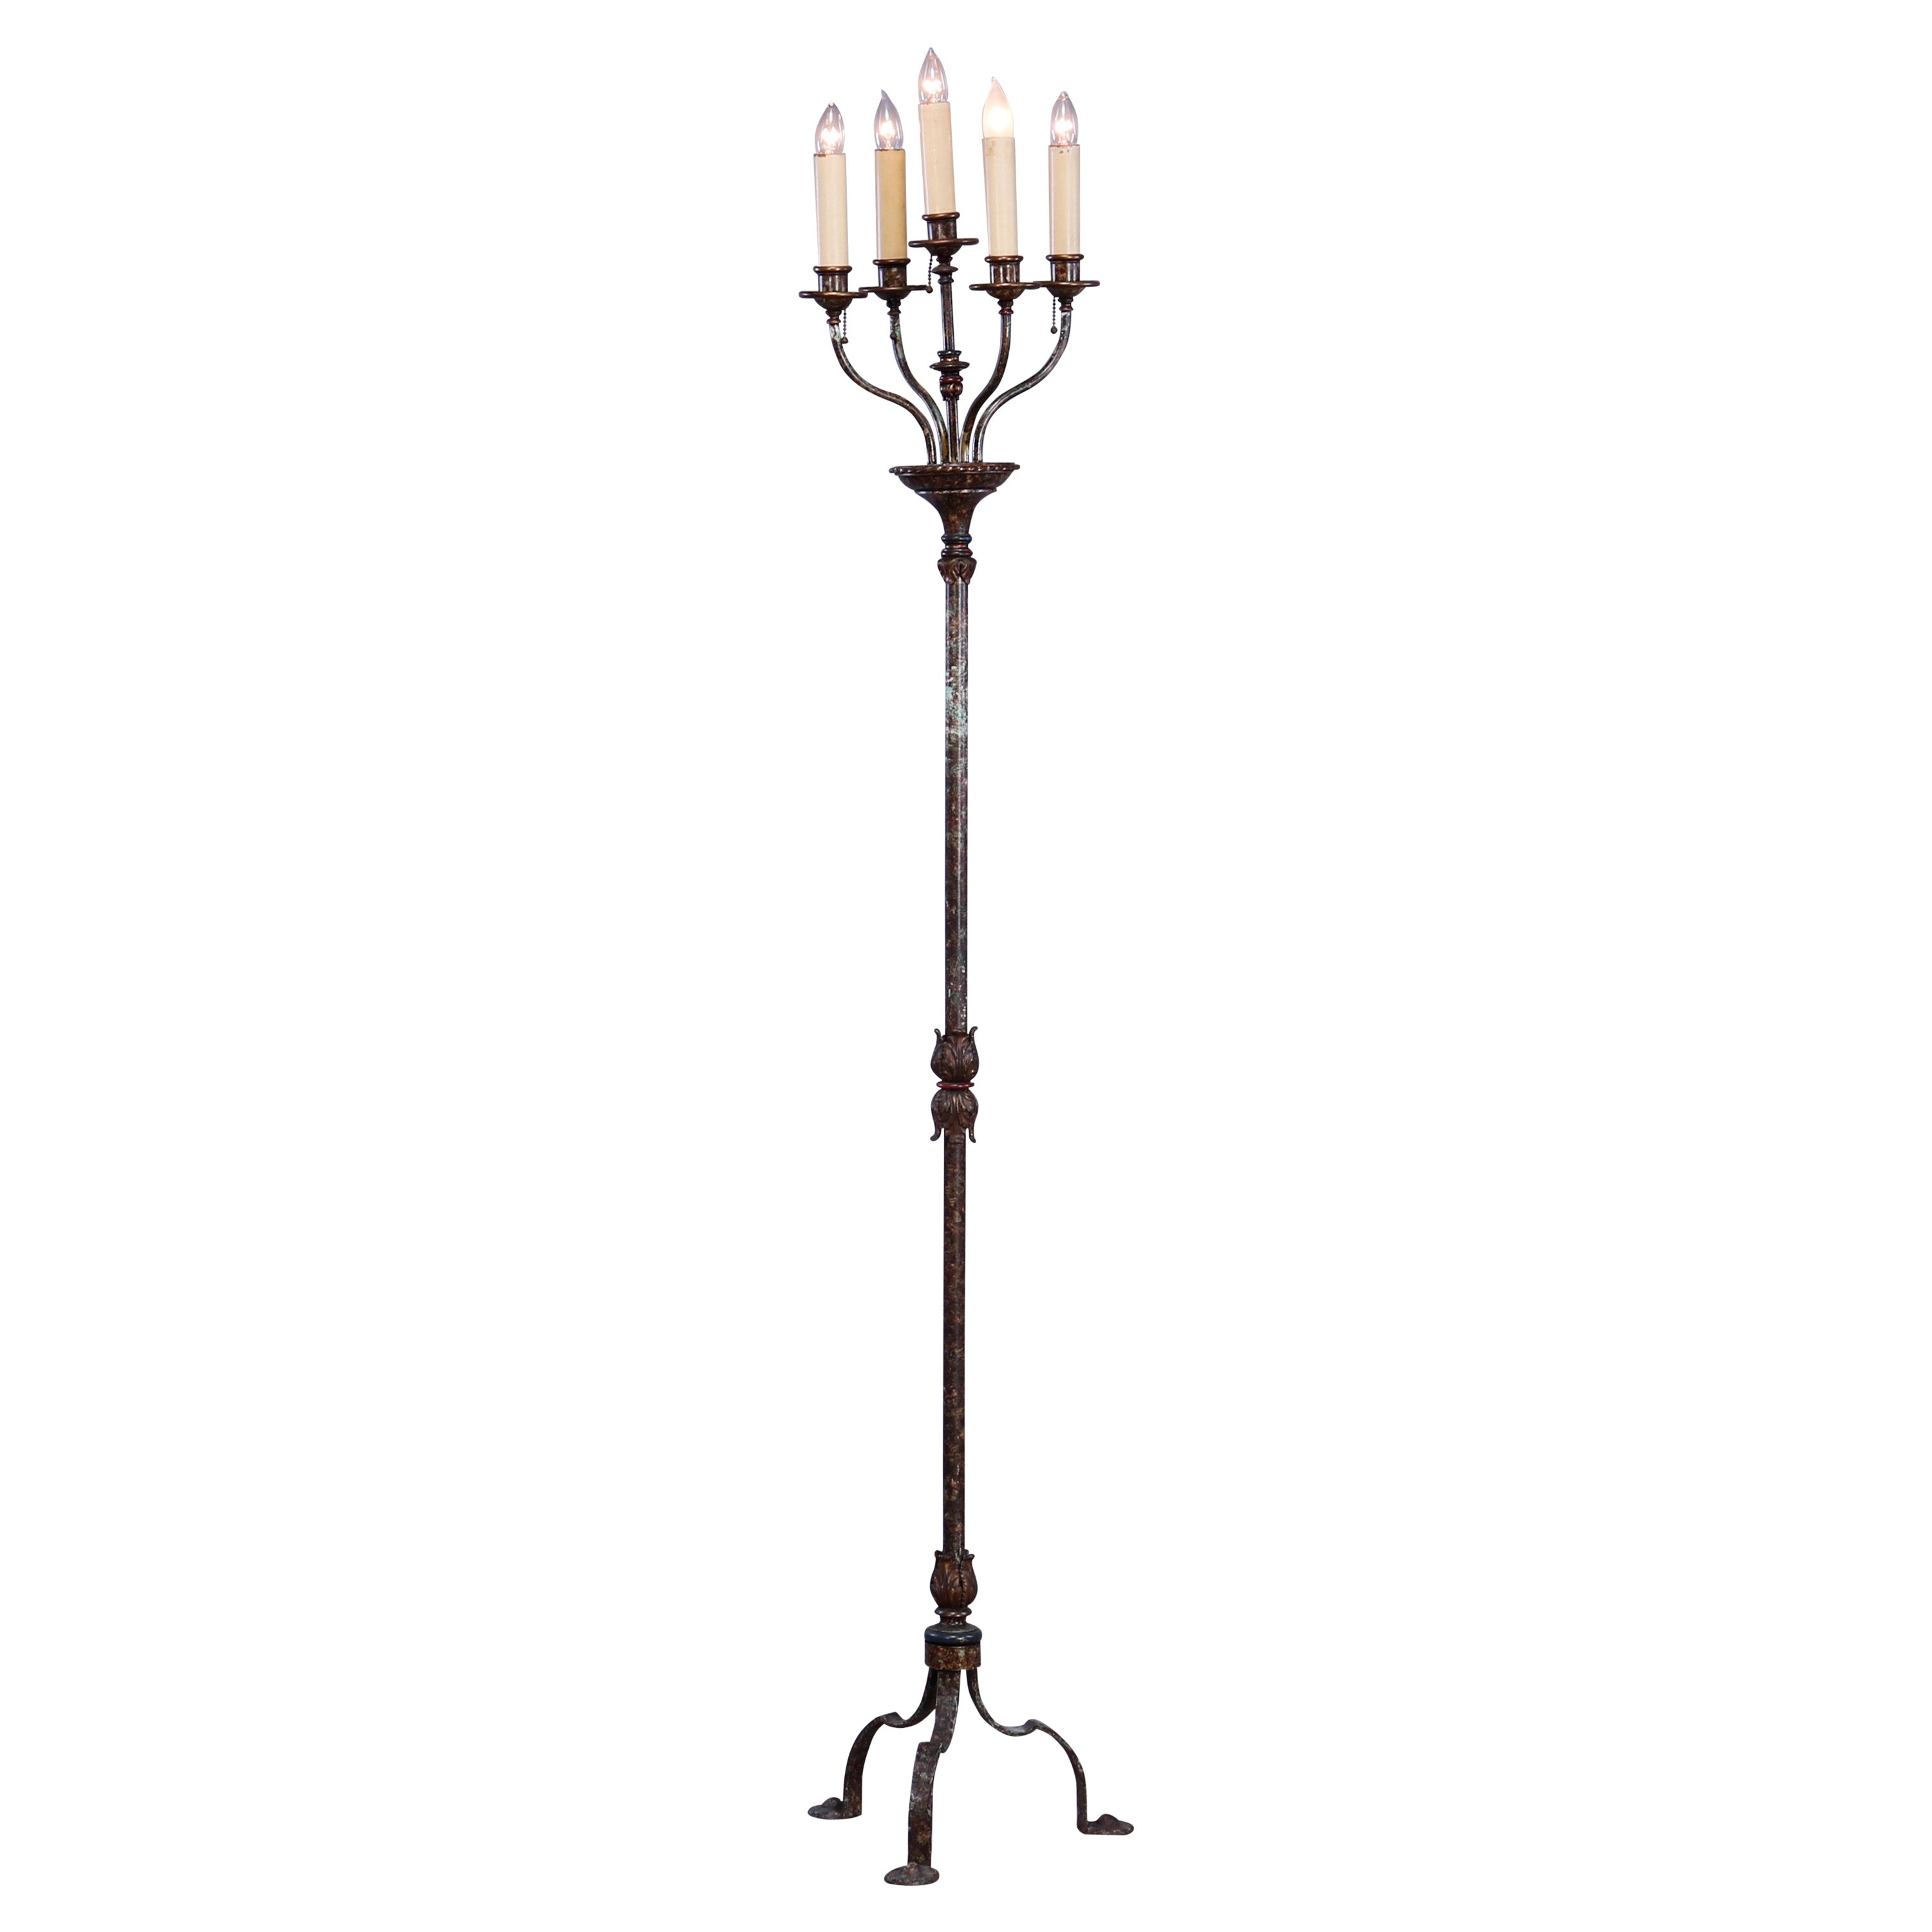 Antique Bronze & Wrought Iron Five-Light Candelabra Floor Lamp, c1920